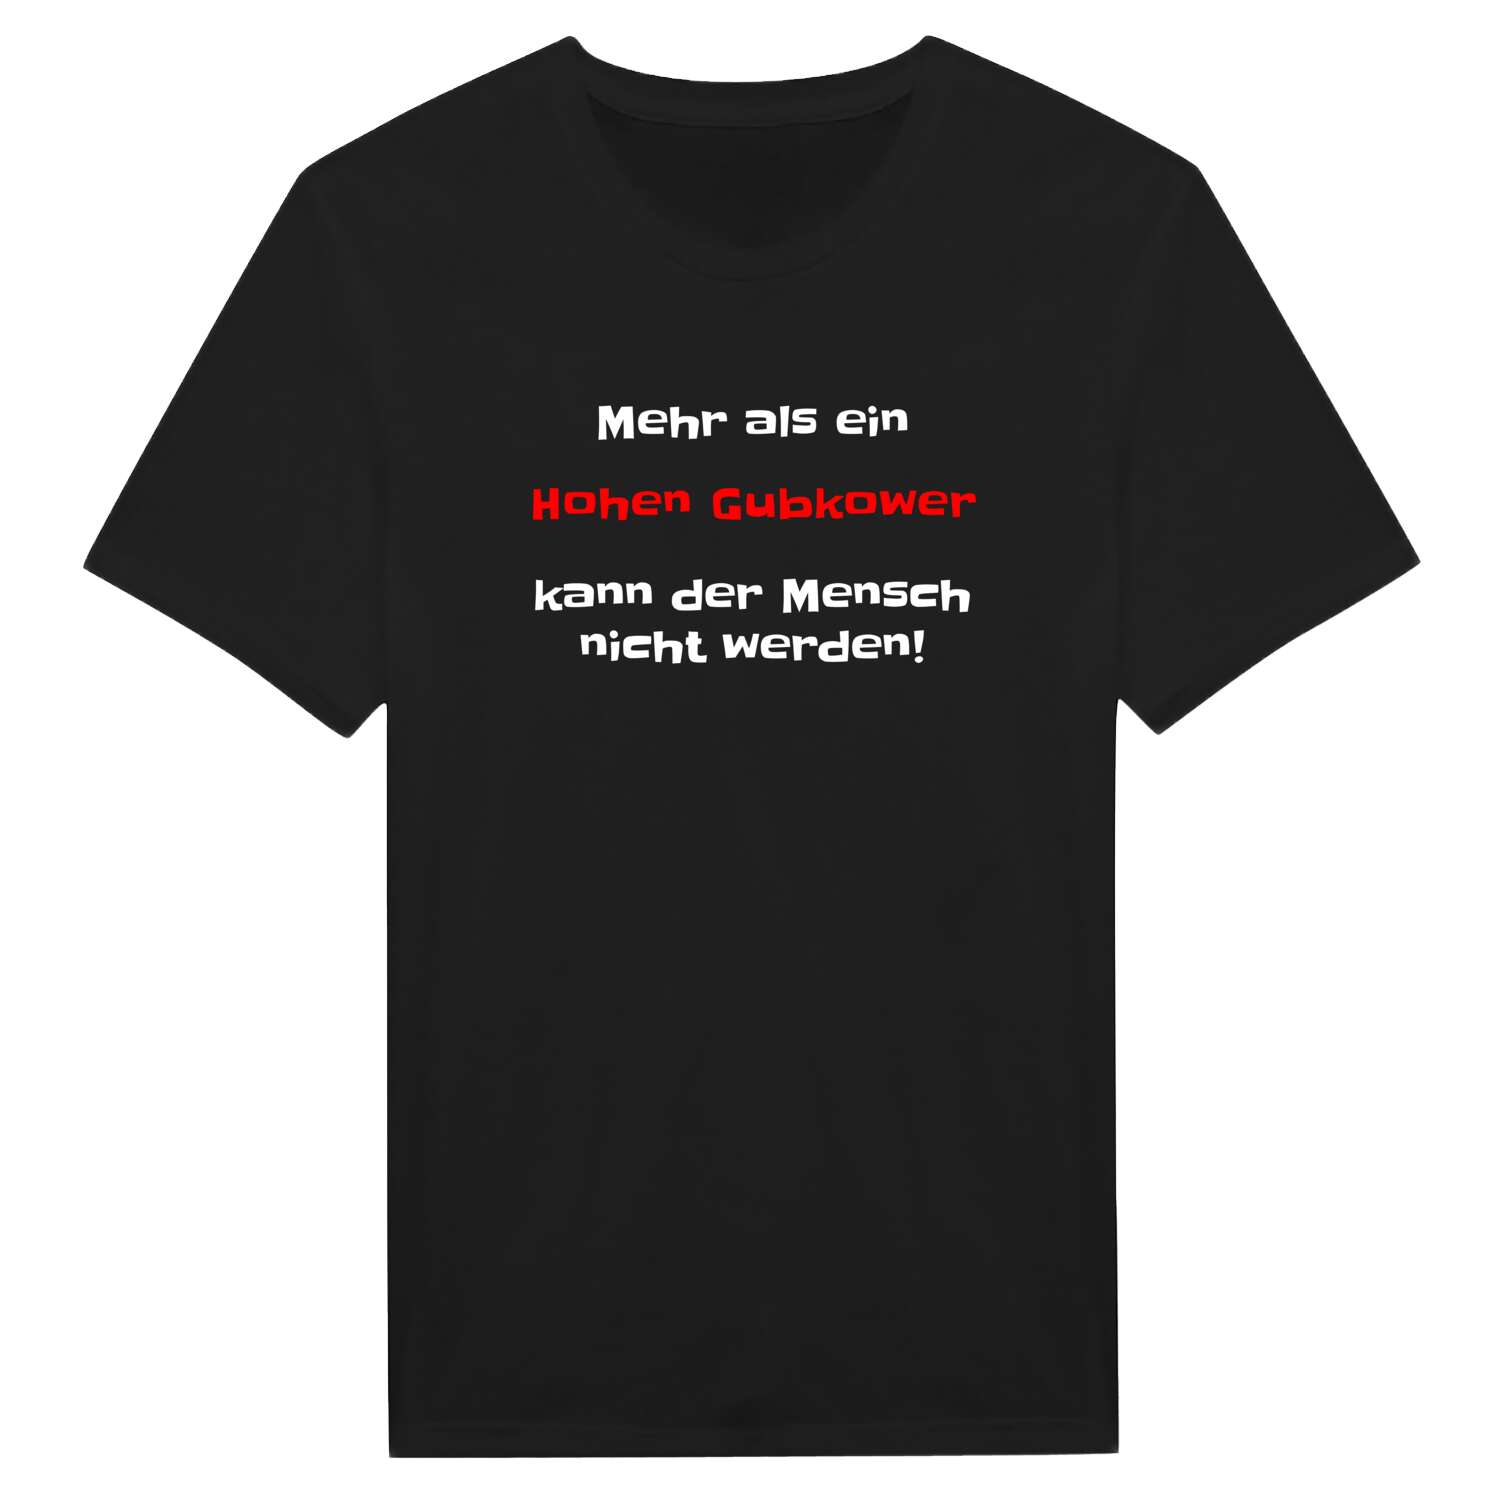 Hohen Gubkow T-Shirt »Mehr als ein«